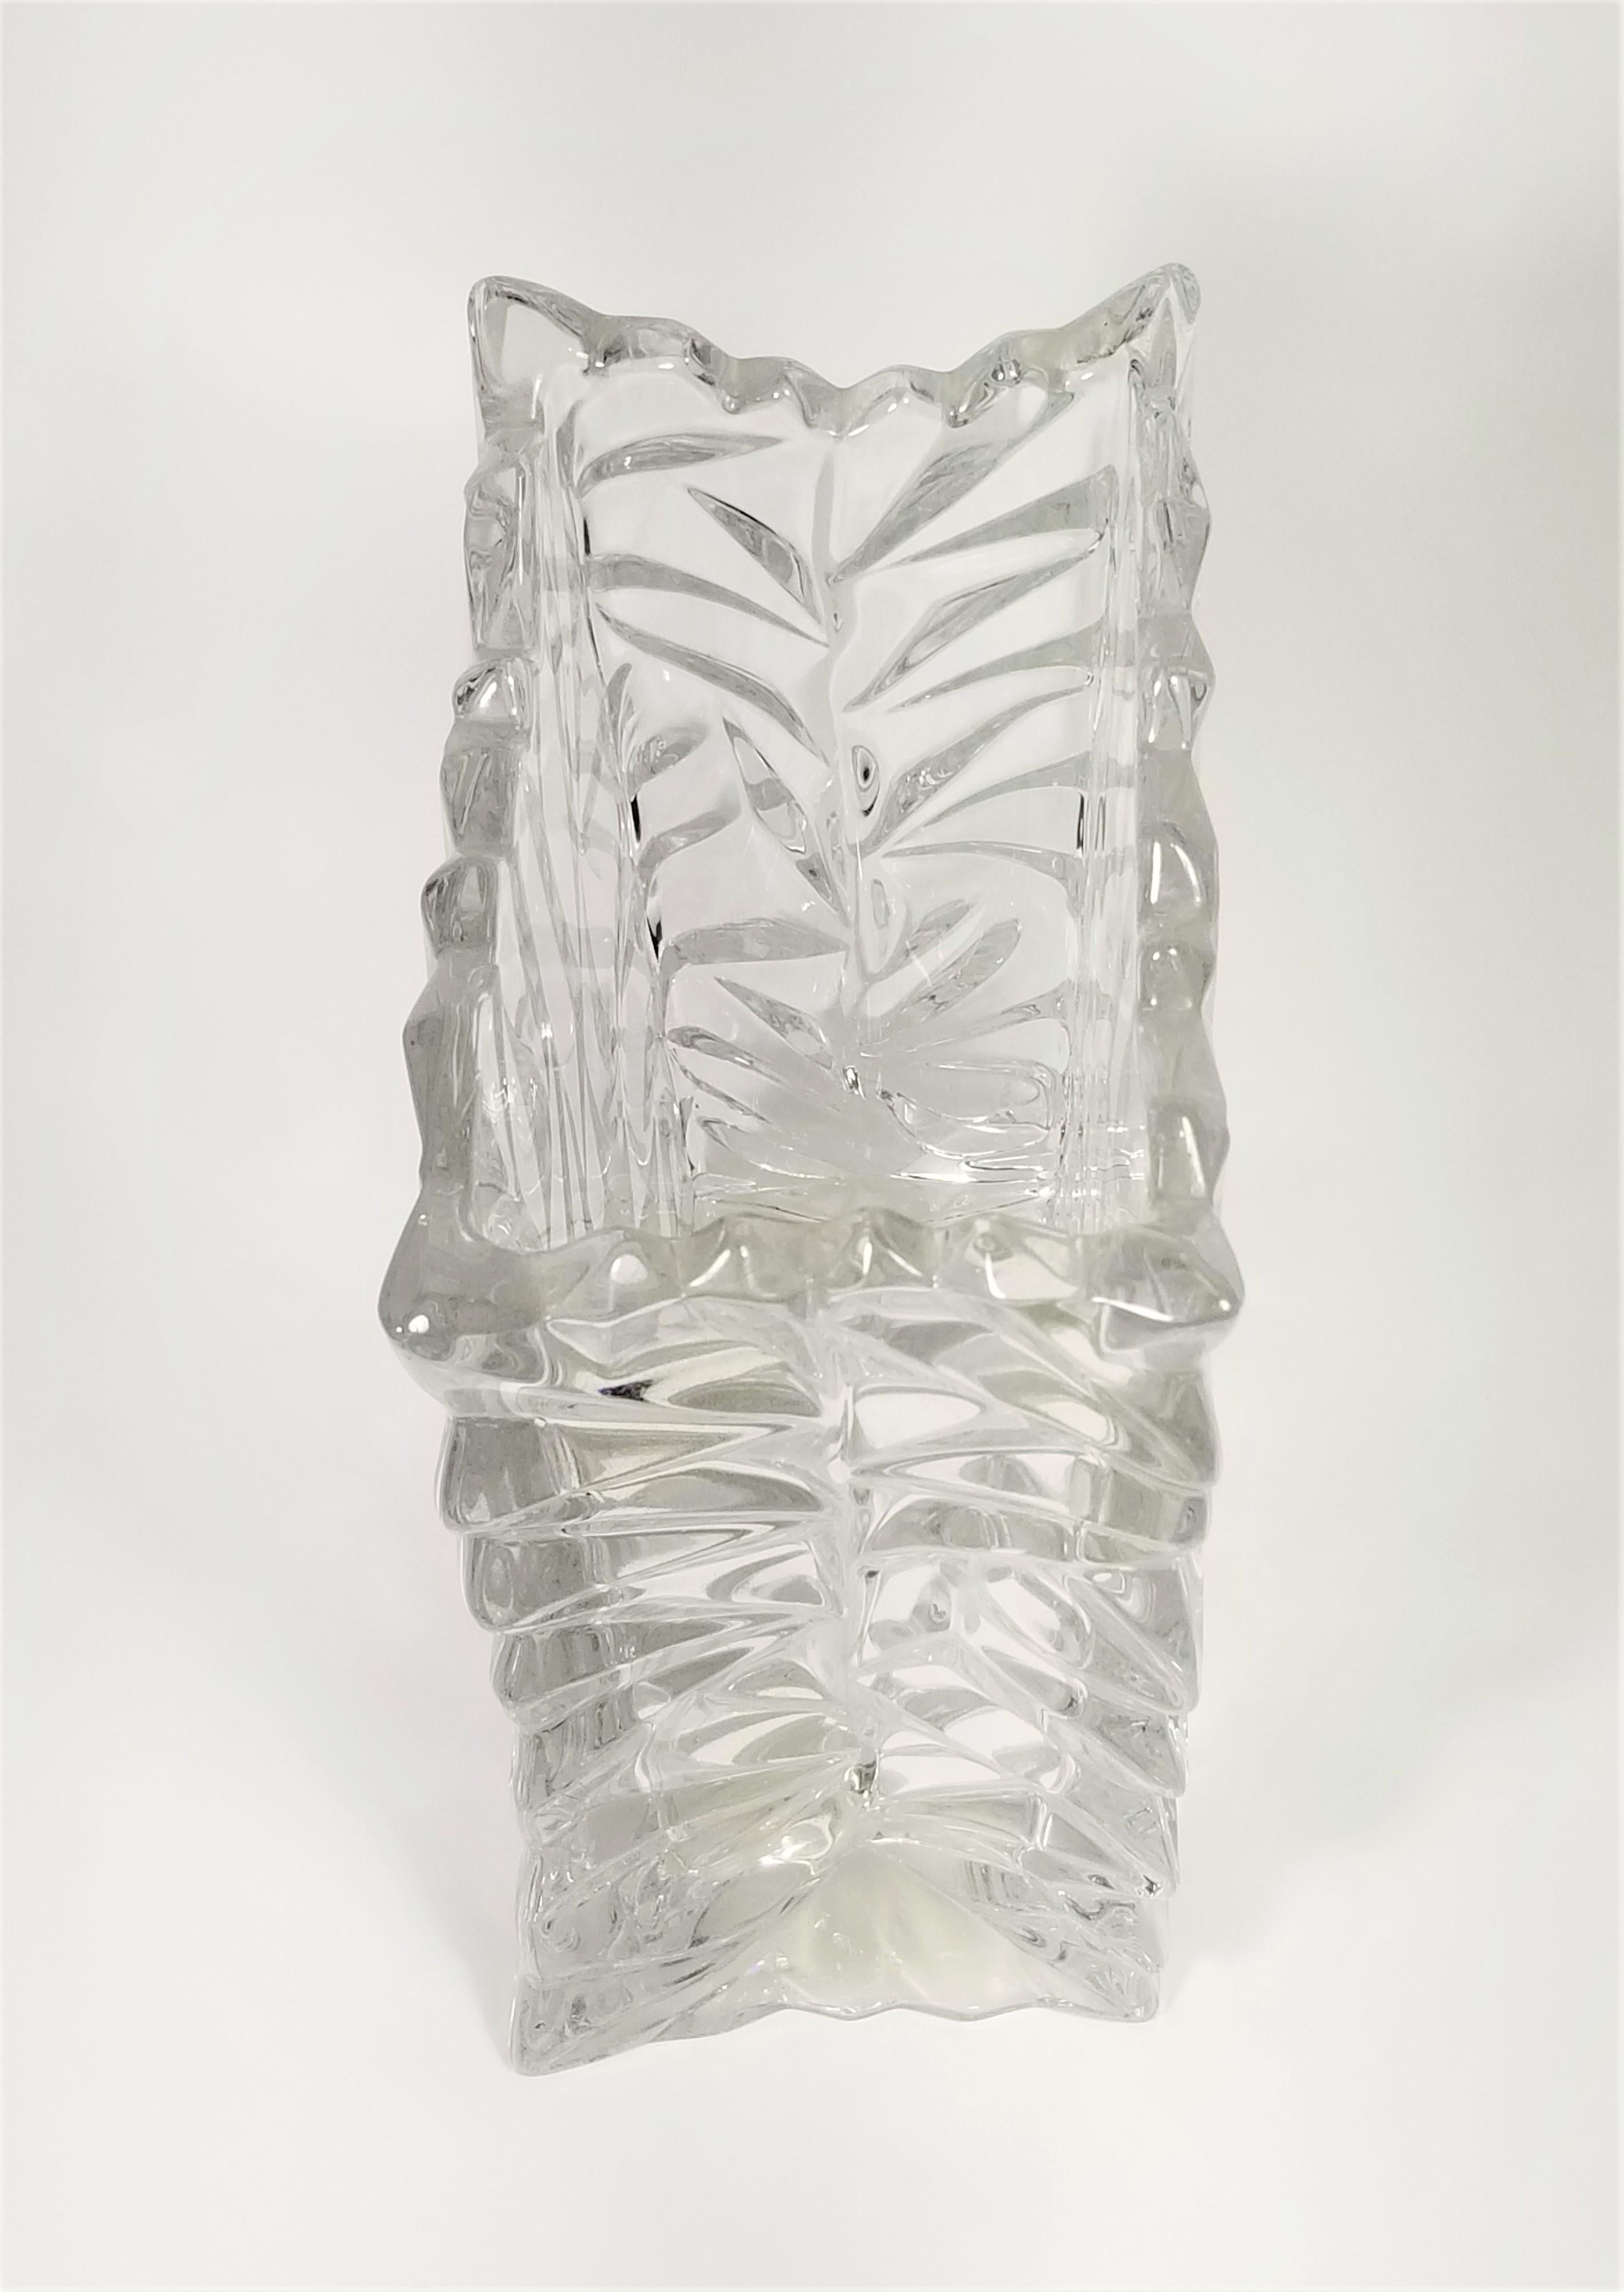 Rosenthal Crystal Vase Brutalist Design Made in Germany For Sale 3